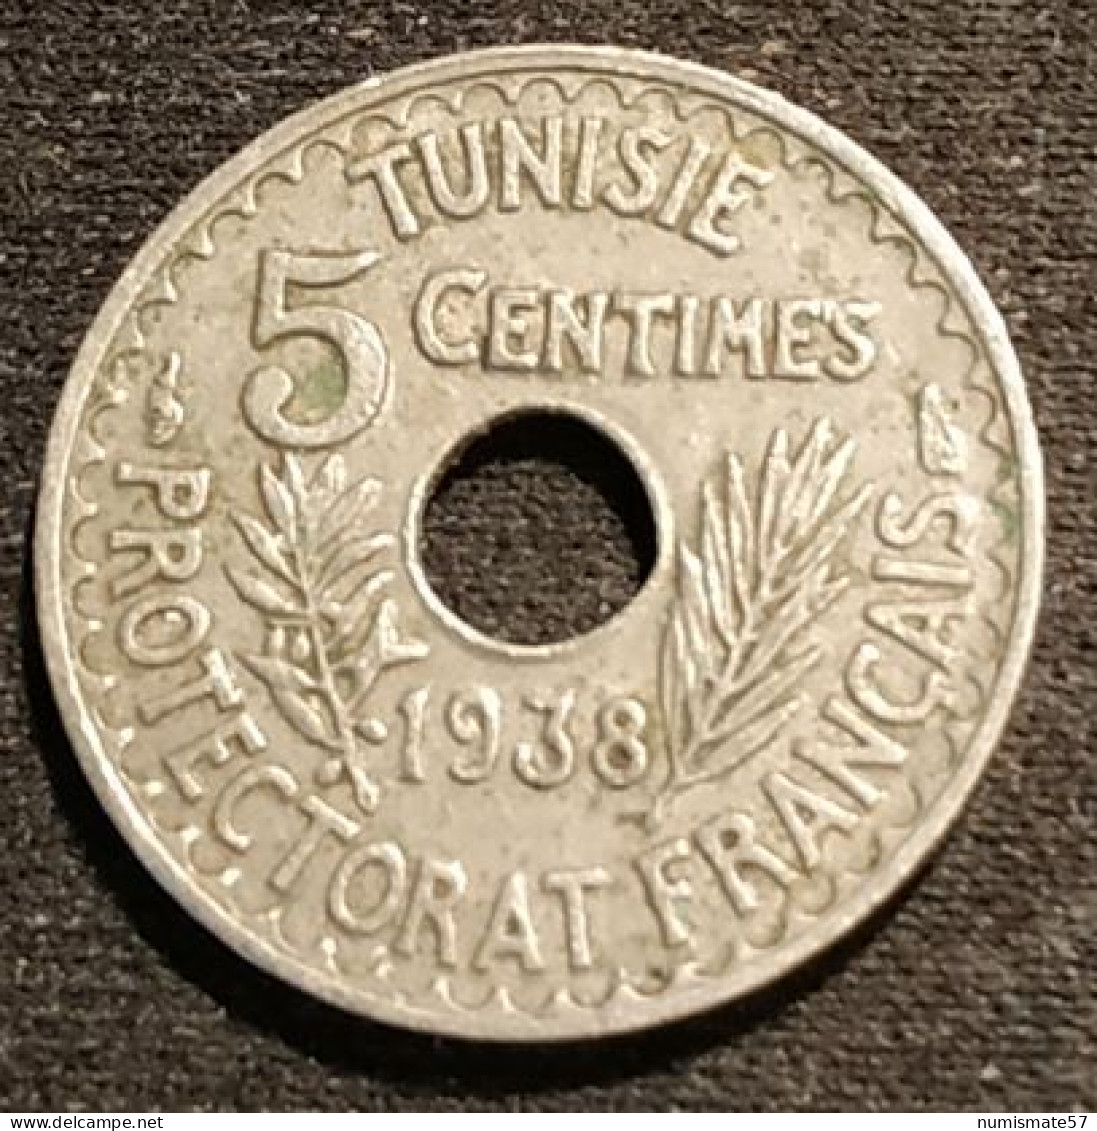 TUNISIE - TUNISIA - 5 CENTIMES 1938 ( 1357 ) - Ahmad Pasha - Protectorat Français - KM 258 - Tunesien